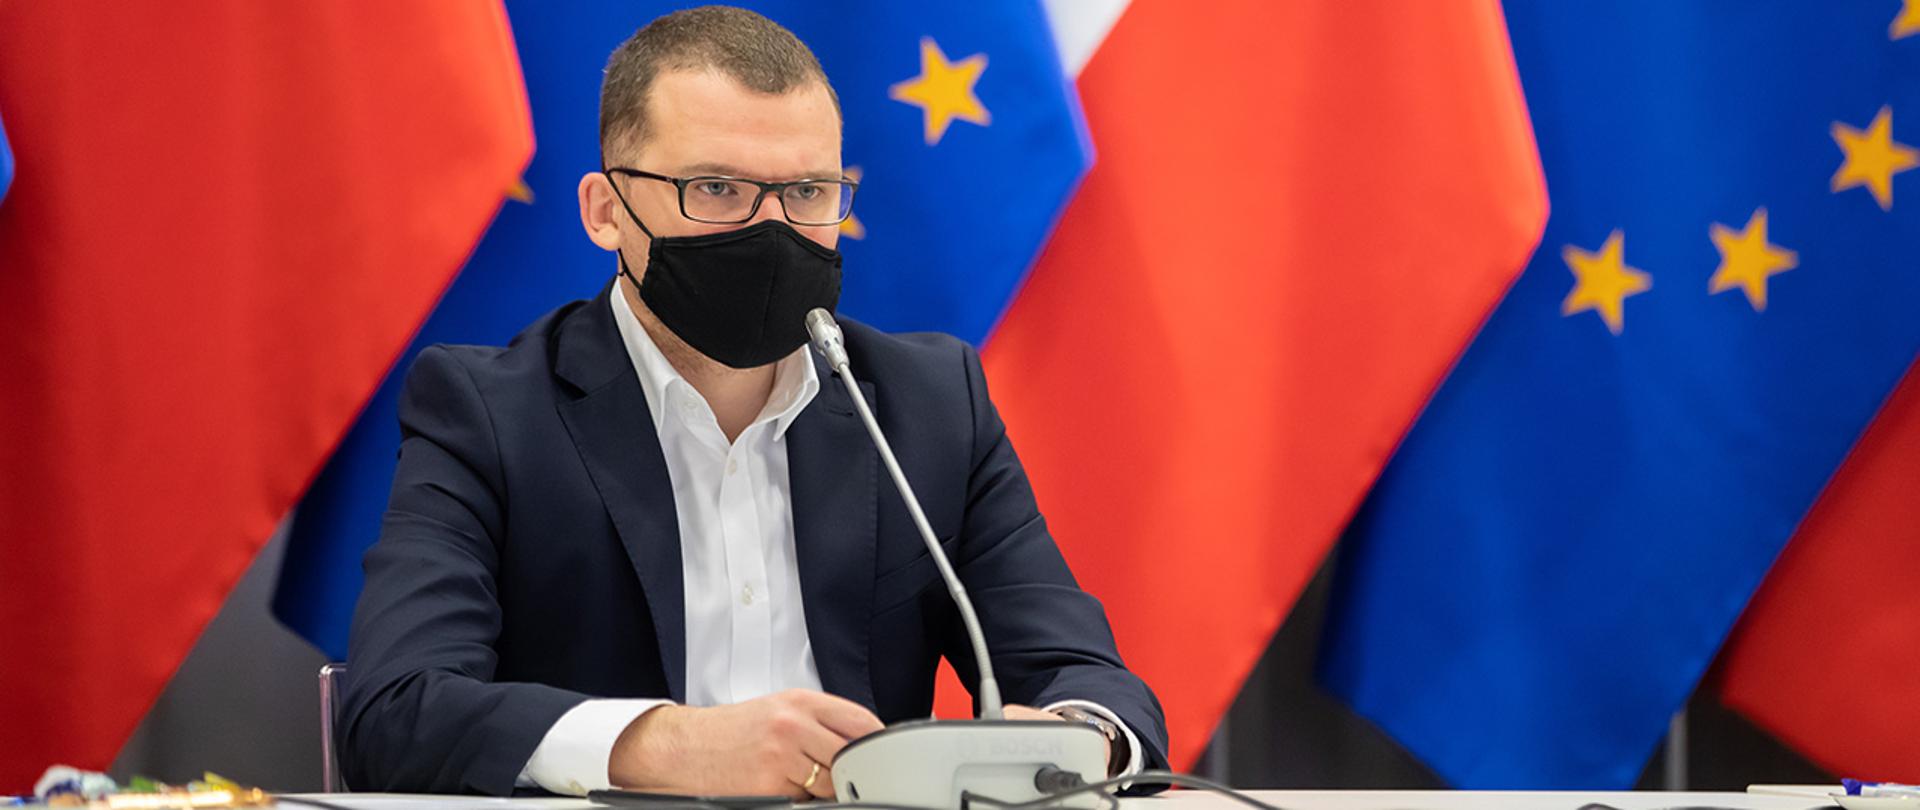 Na zdjęciu widać wiceministra Pawła Szefernakera siedzącego za stołem na tle flag Polski i UE.